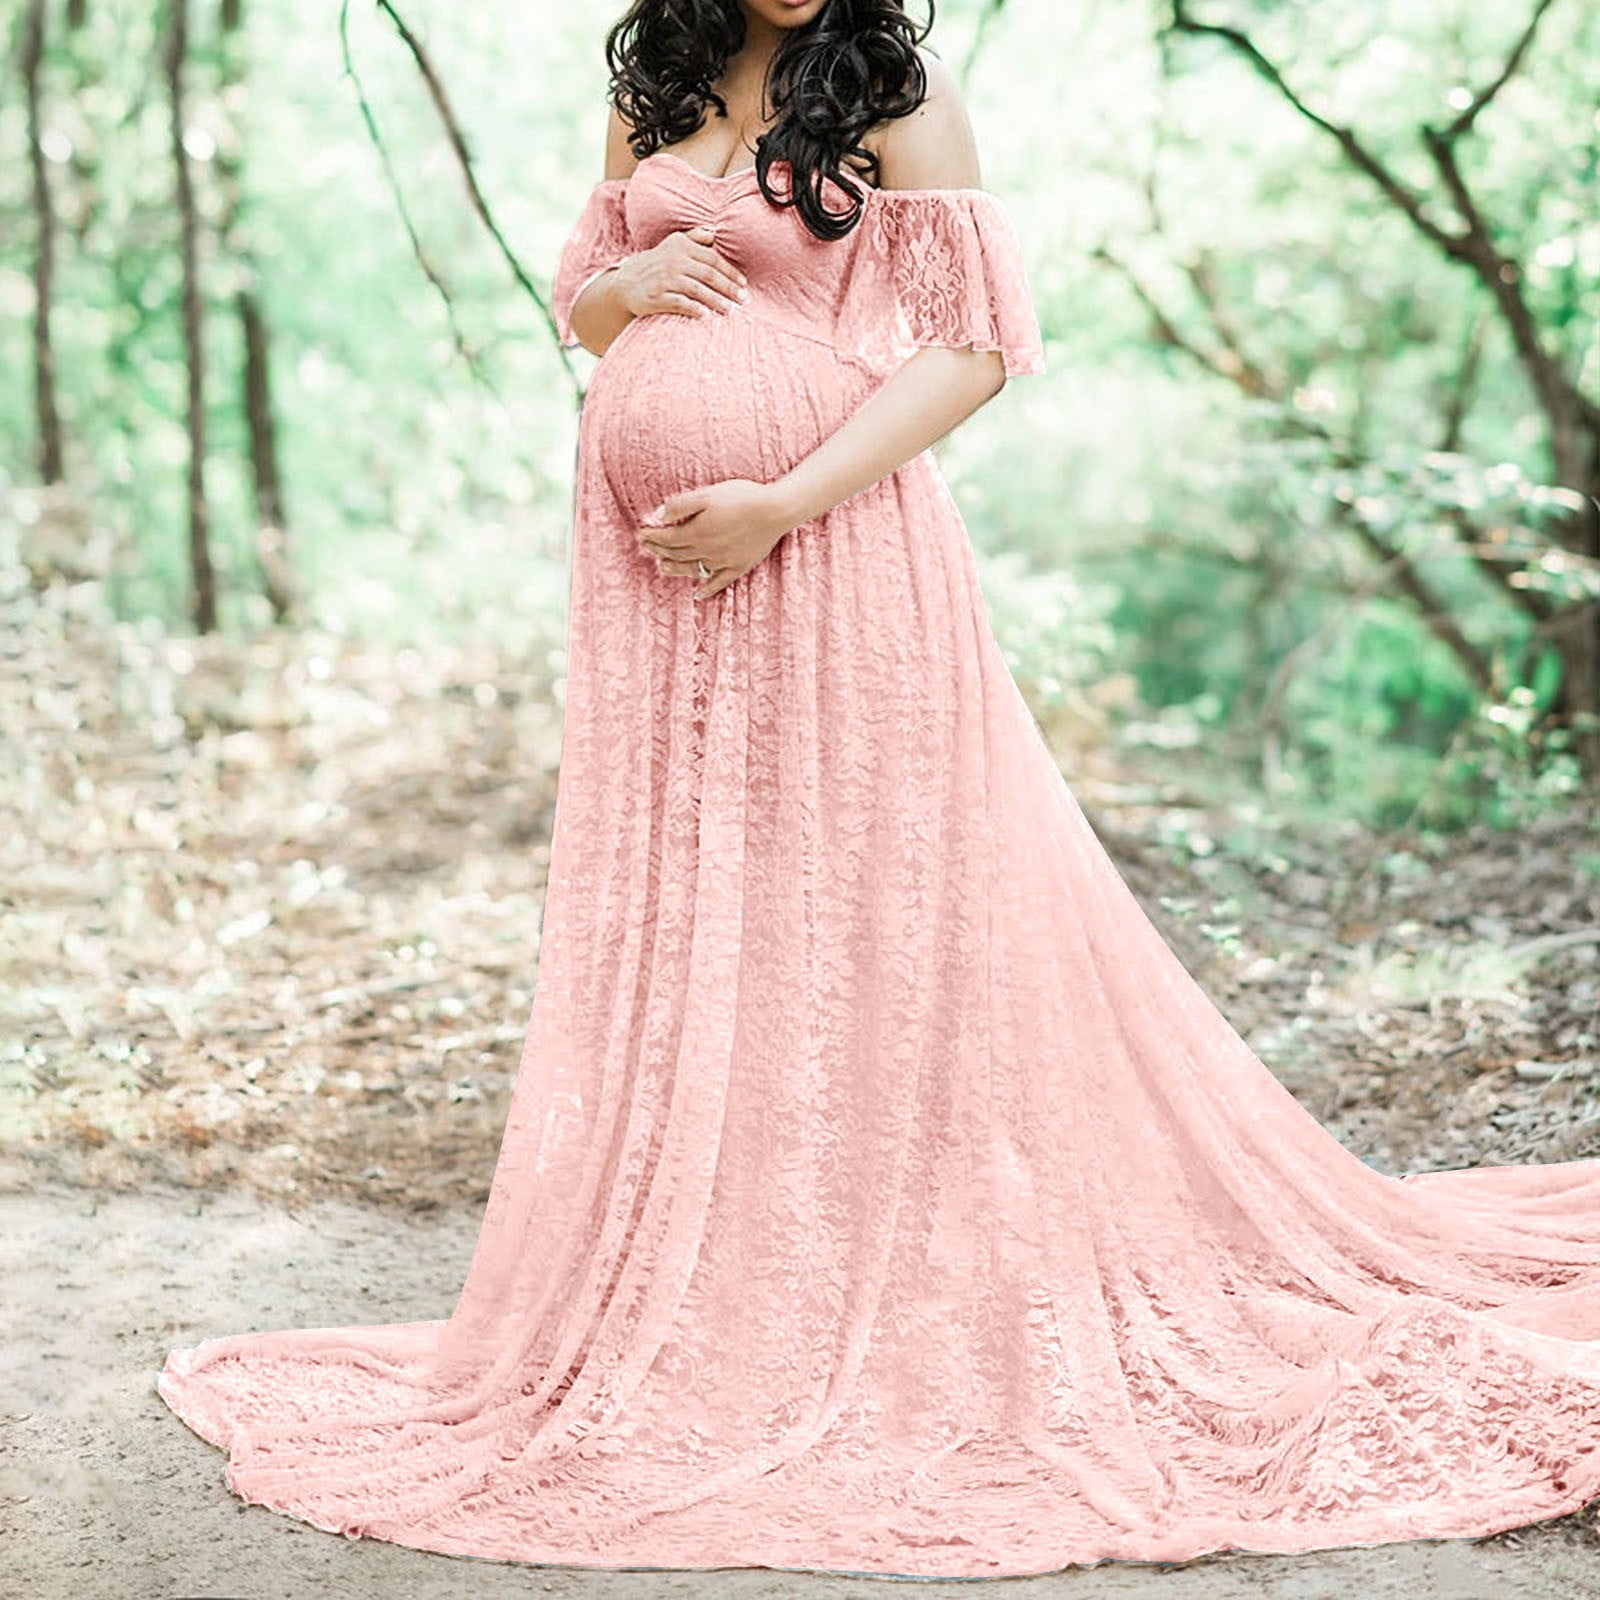 Green Velvet Maternity Gown for Babyshower – loveangeldress